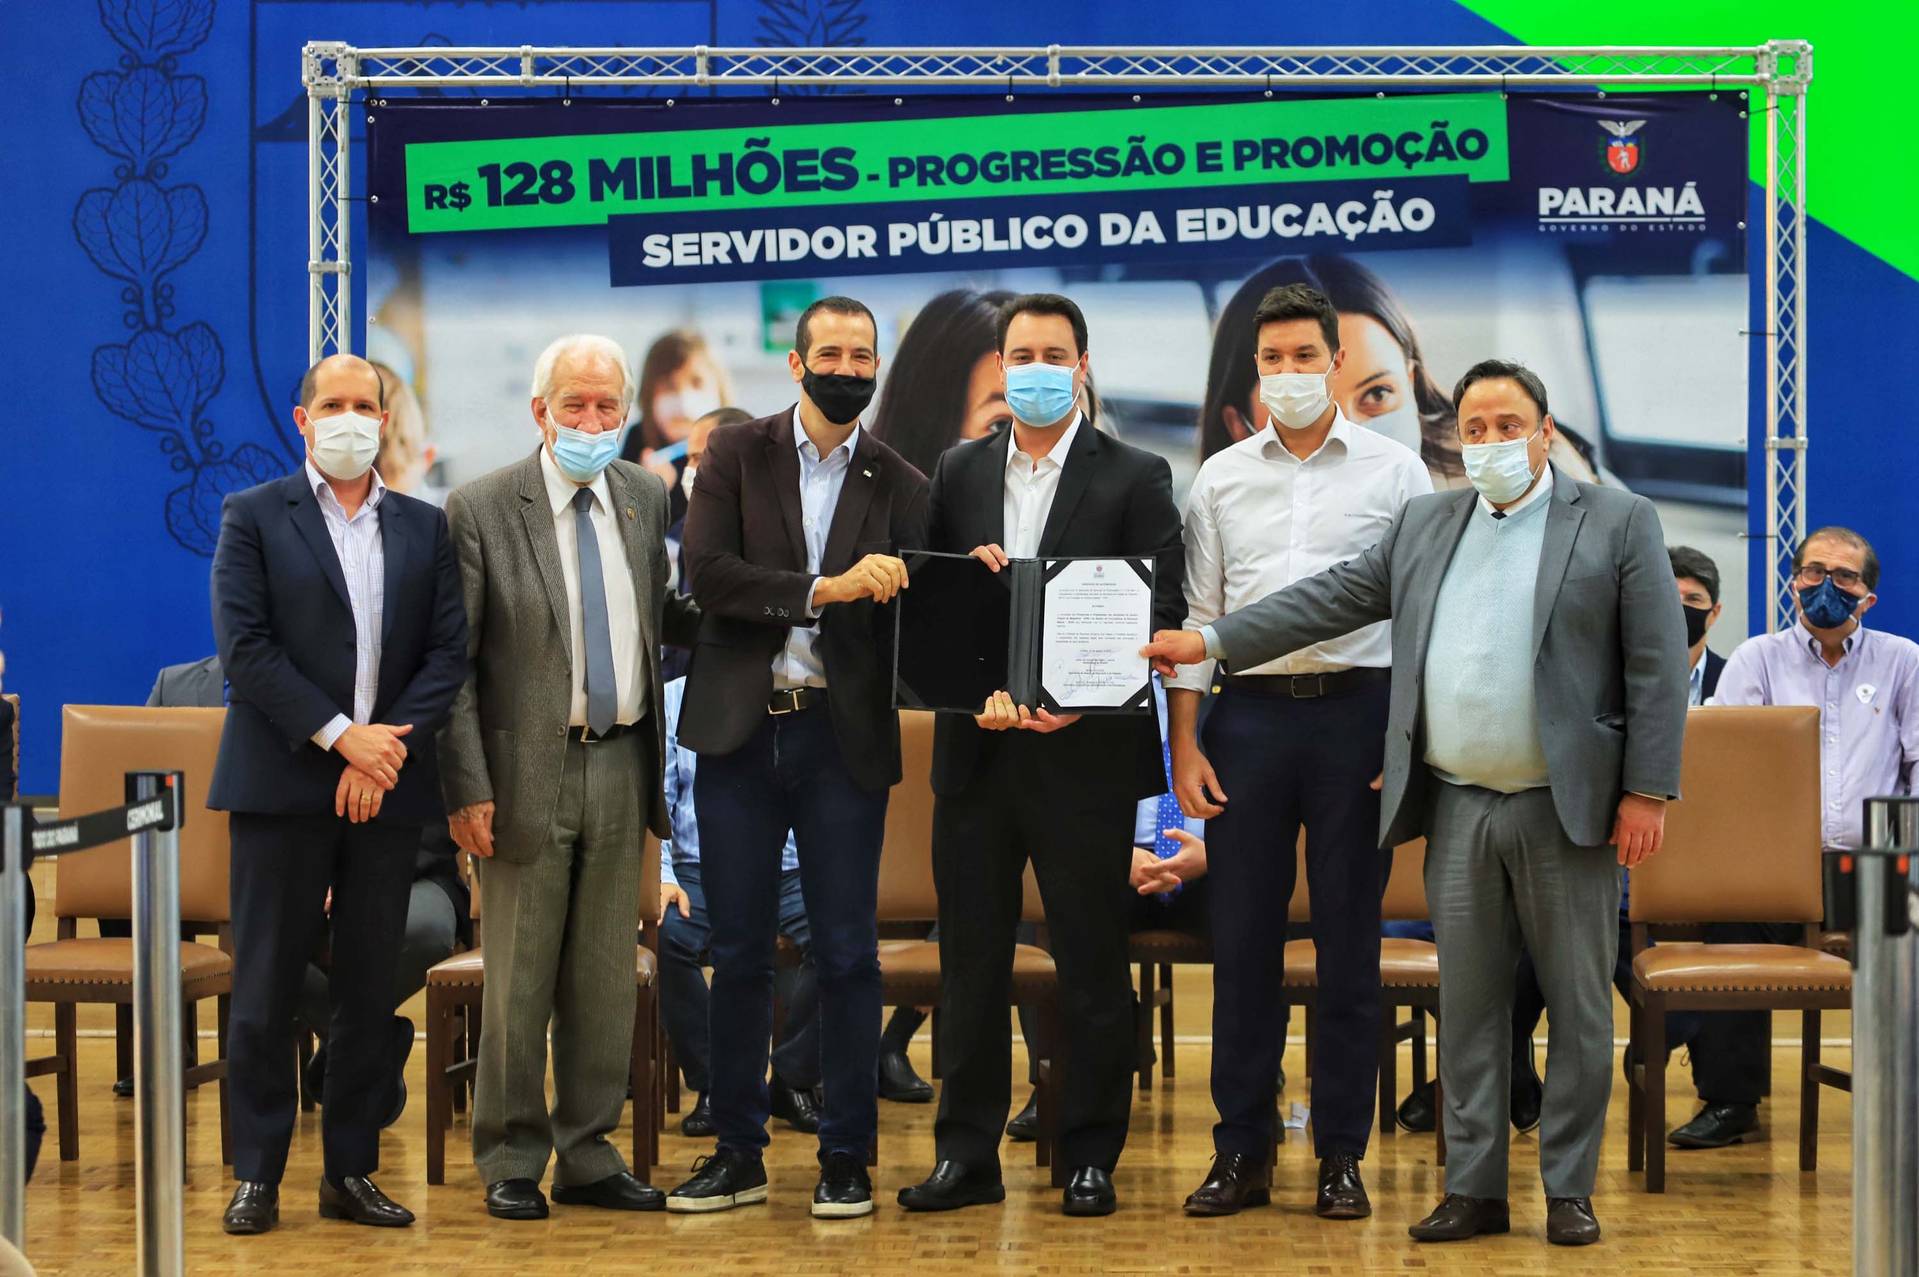 Paraná investe R$ 128 milhões e garante promoção e progressão de servidores da educação